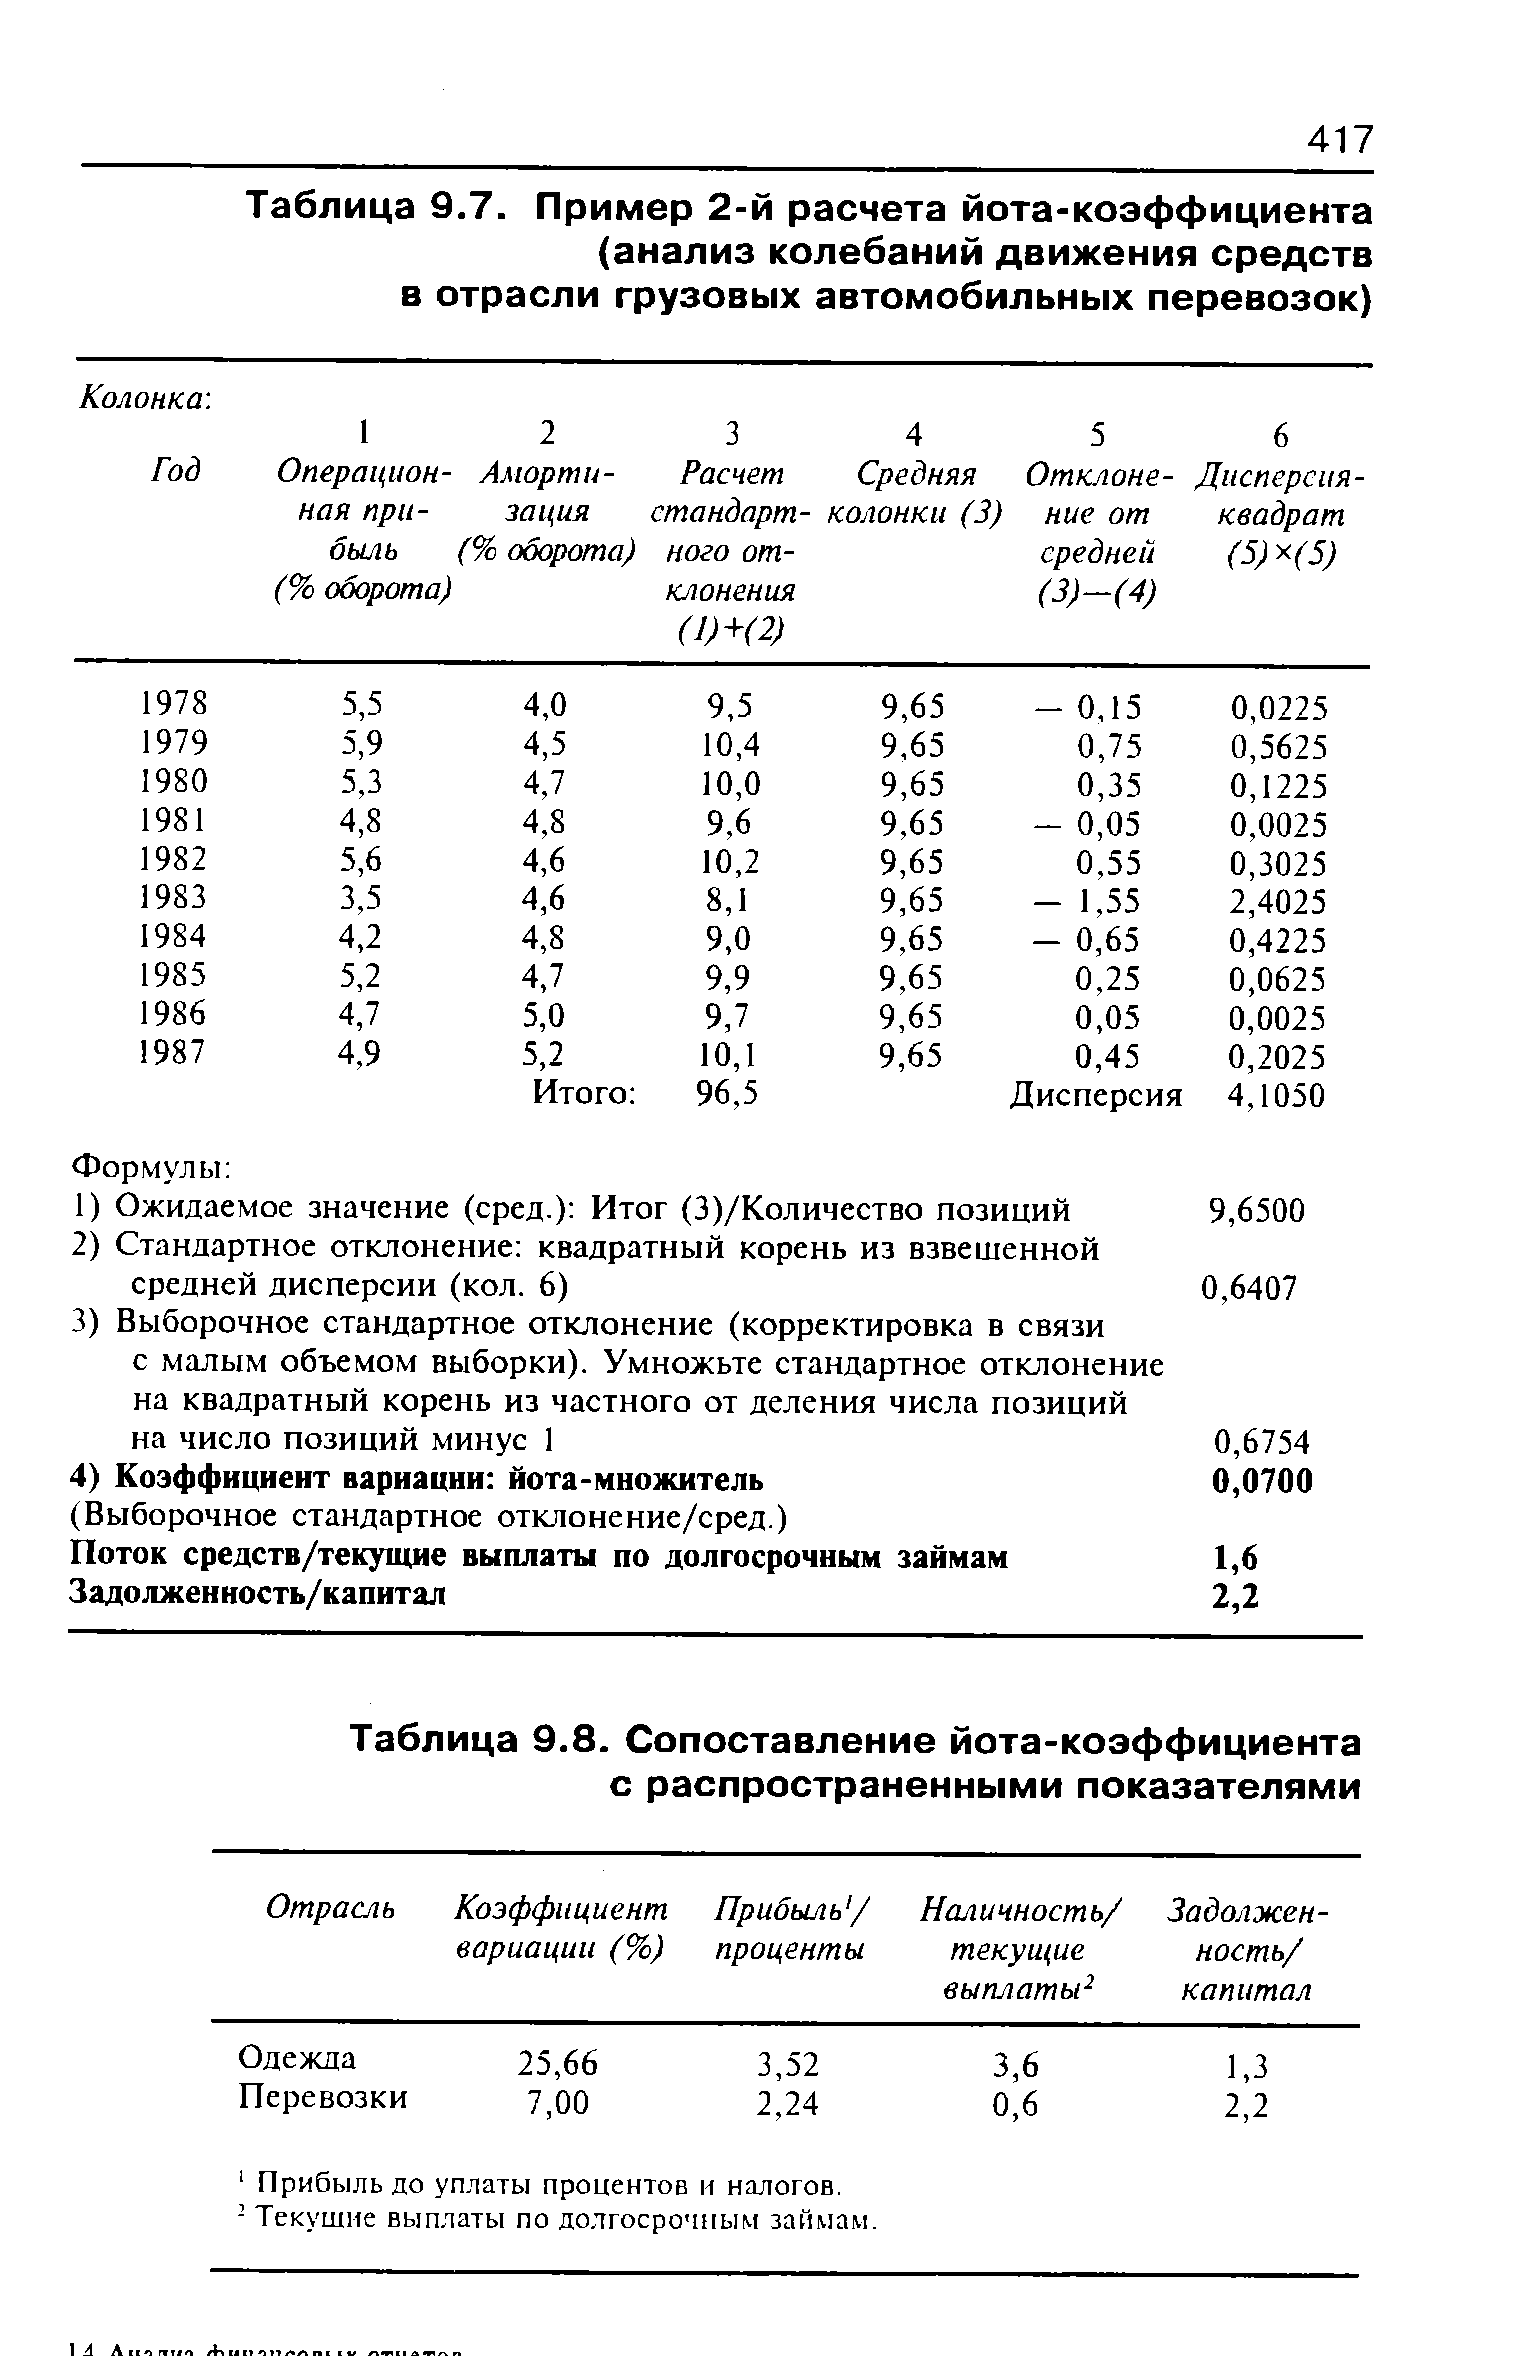 Таблица 9.8. Сопоставление йота-коэффициента с распространенными показателями
